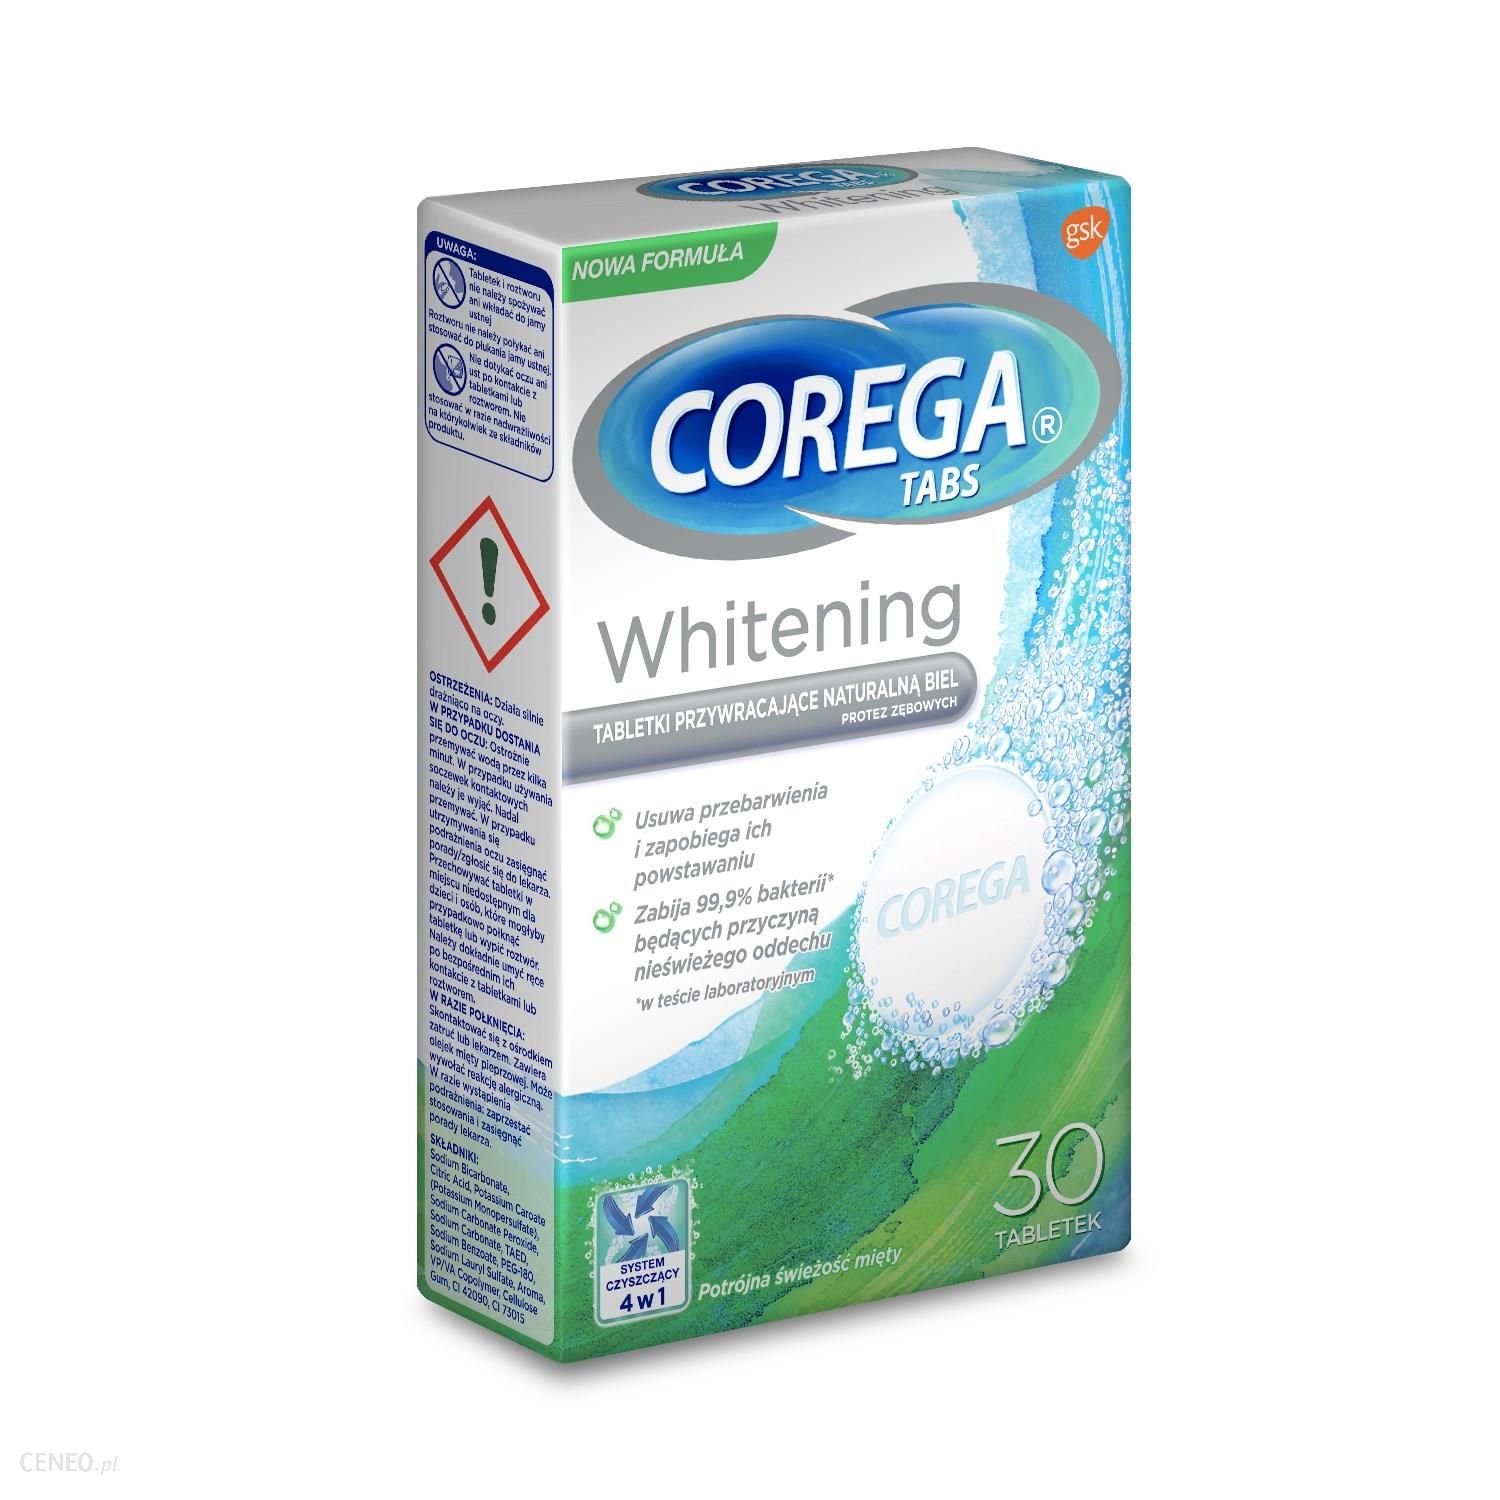 Corega Tabs Whitening Tabletki czyszczące do protez zębowych 30 szt.